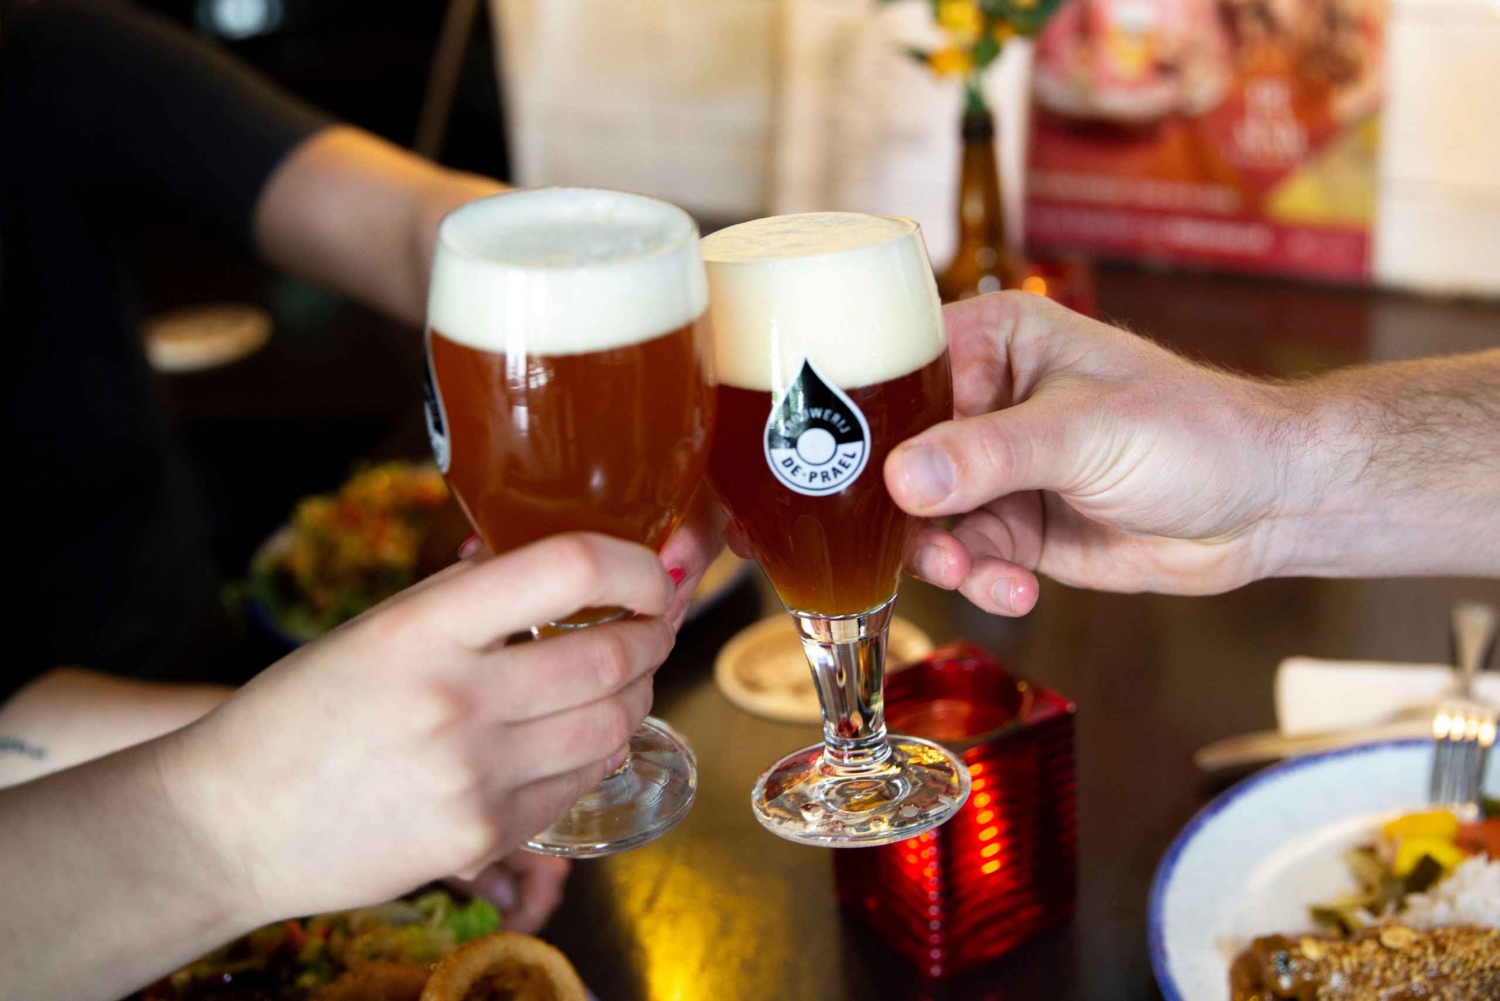 Amsterdam: Brouwerij de Prael Brewery Tour and Tasting